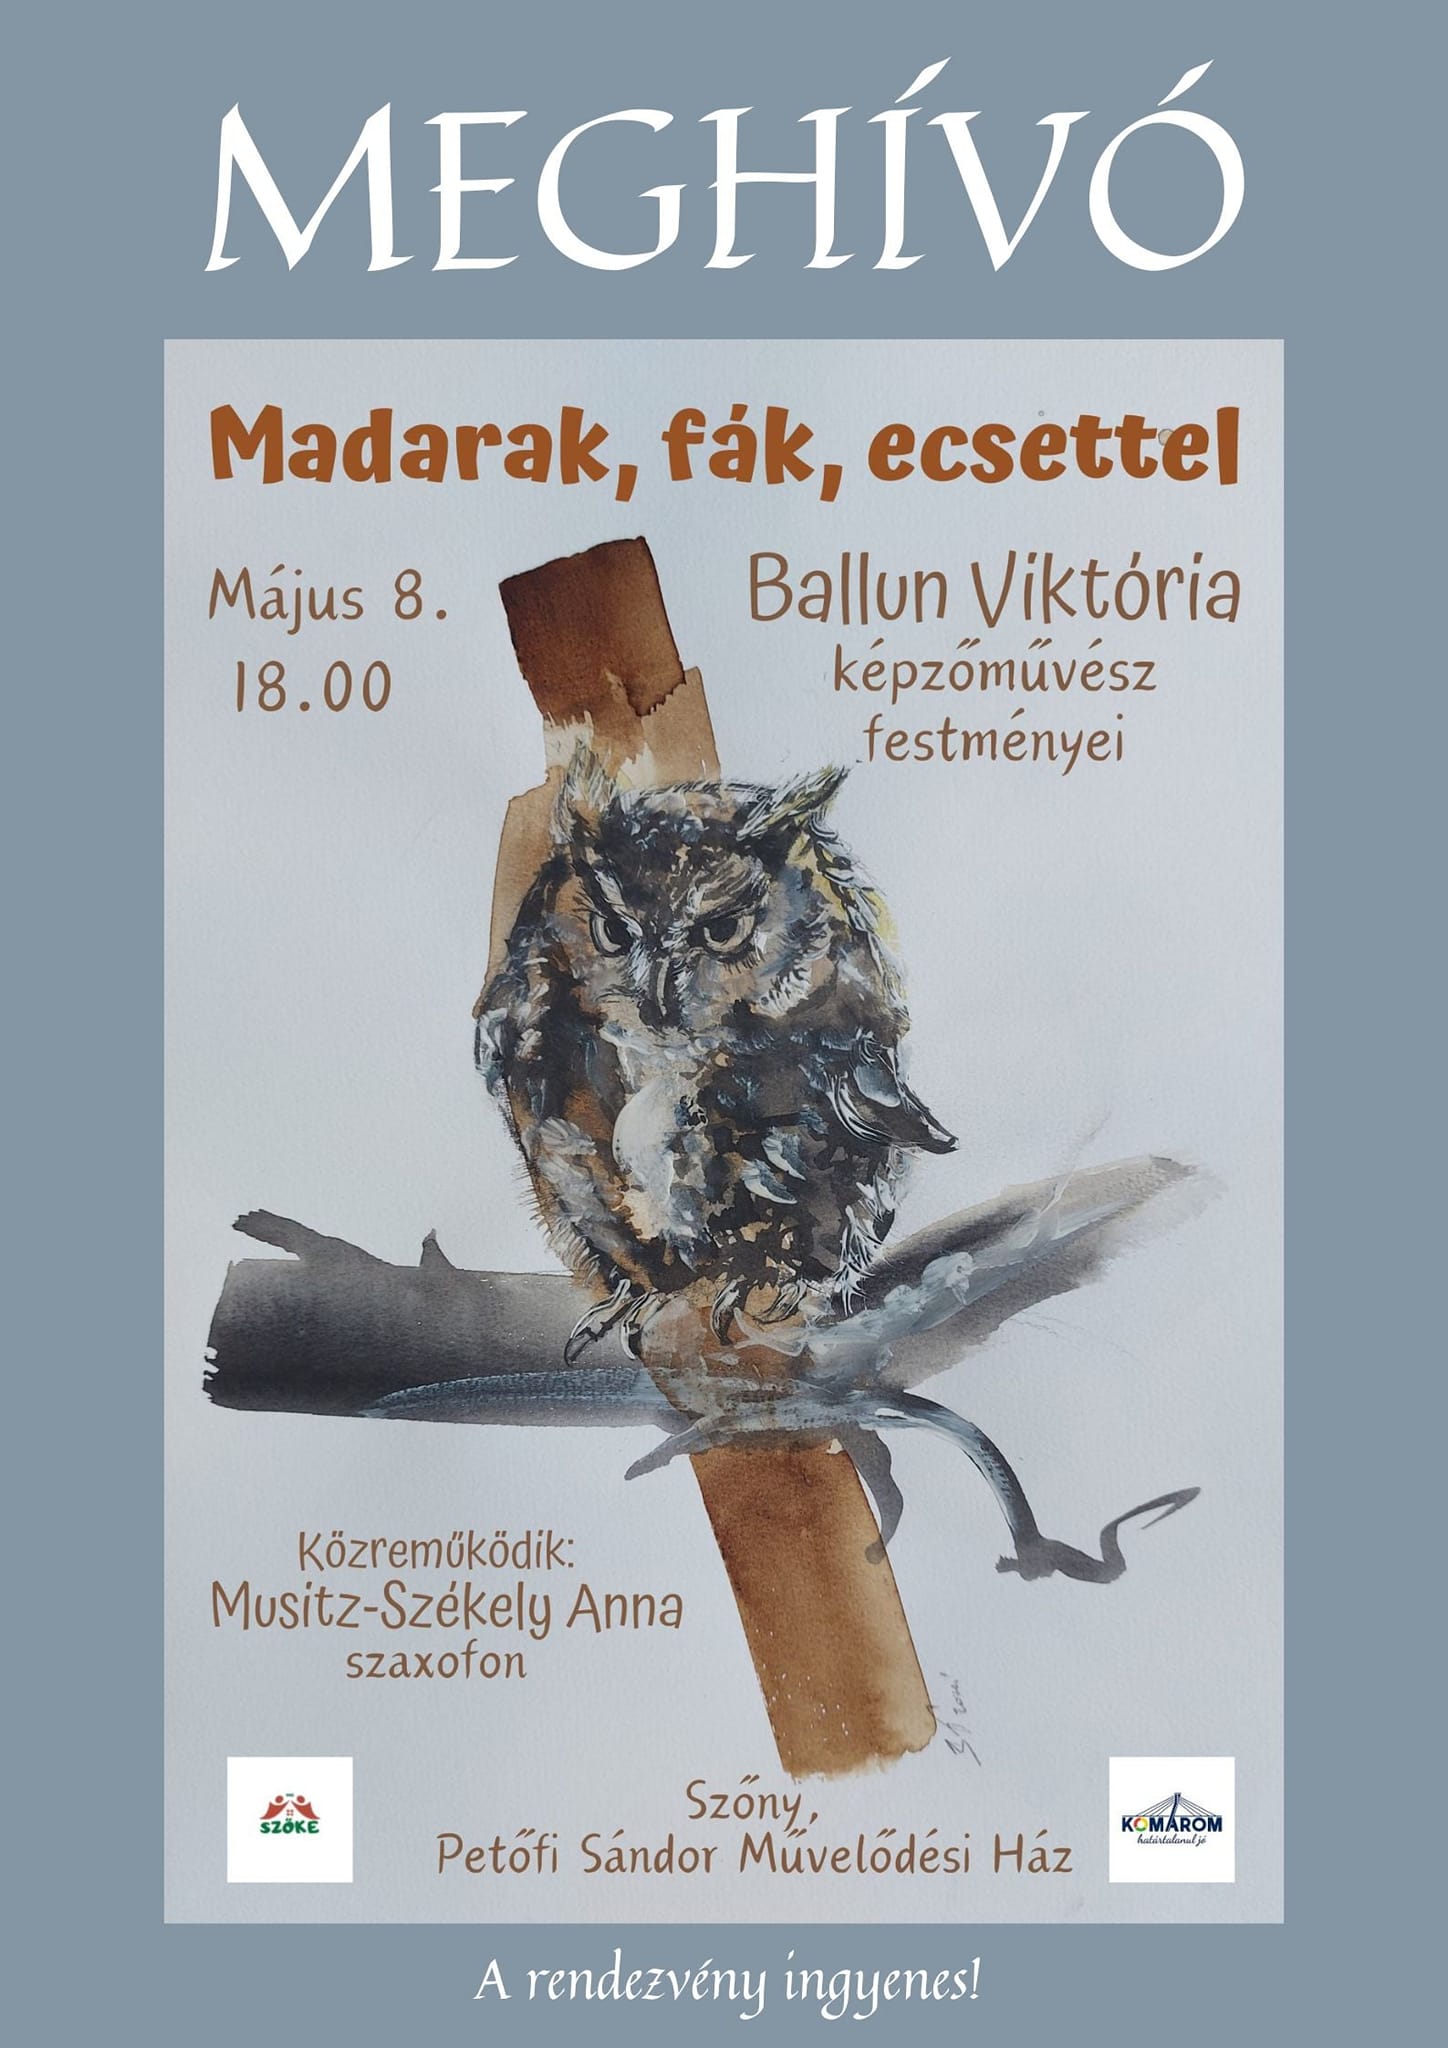 Madarak, fák, ecsettel - Ballun Viktória kiállítása 05.08-24.